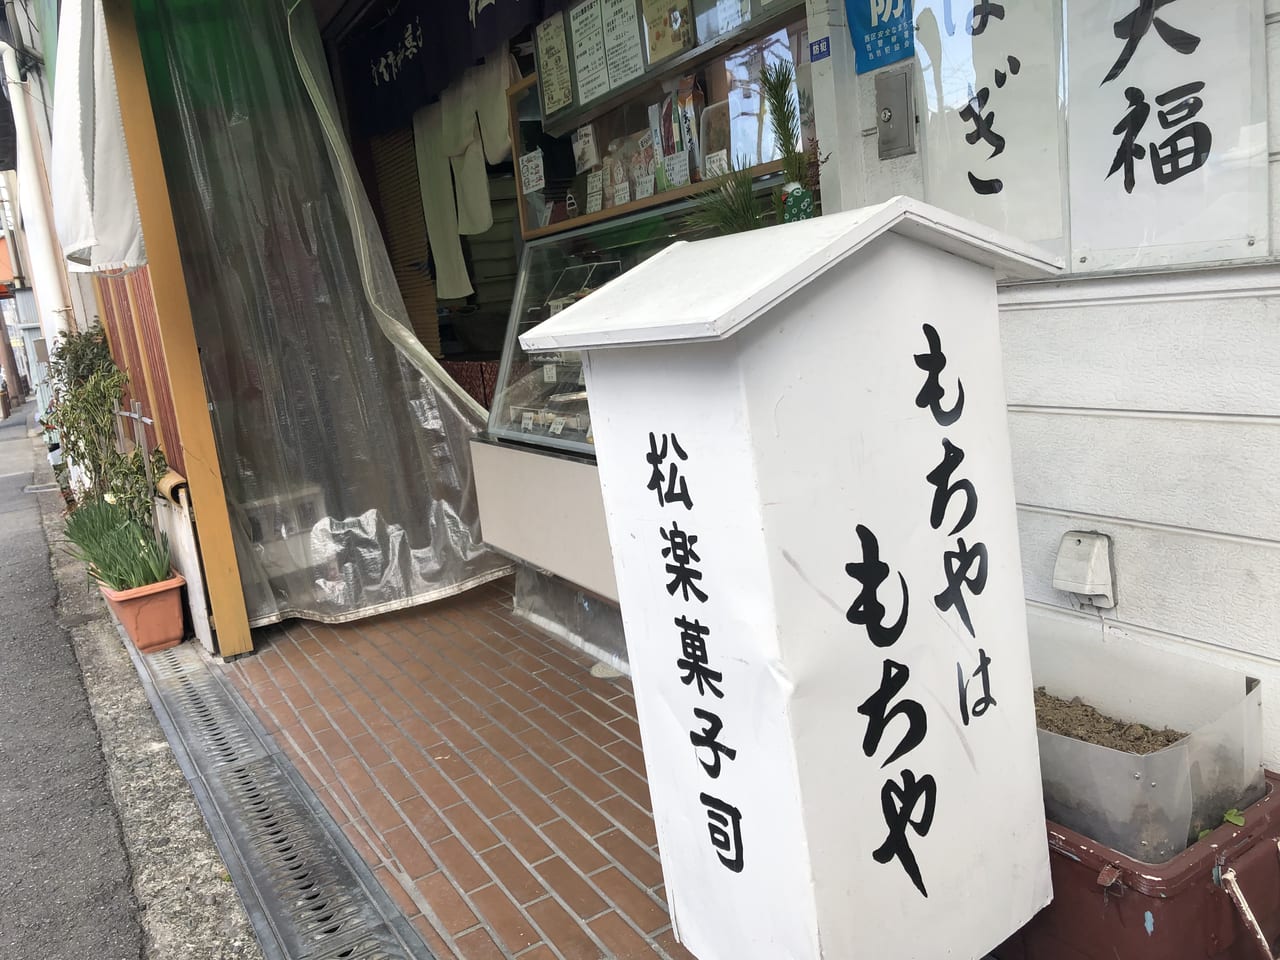 【大阪市西区 千代崎】松楽菓子司さんが開催している和菓子教室が新型コロナの影響でしばらくお休みしているそうです。 | 号外NET 大阪市西区